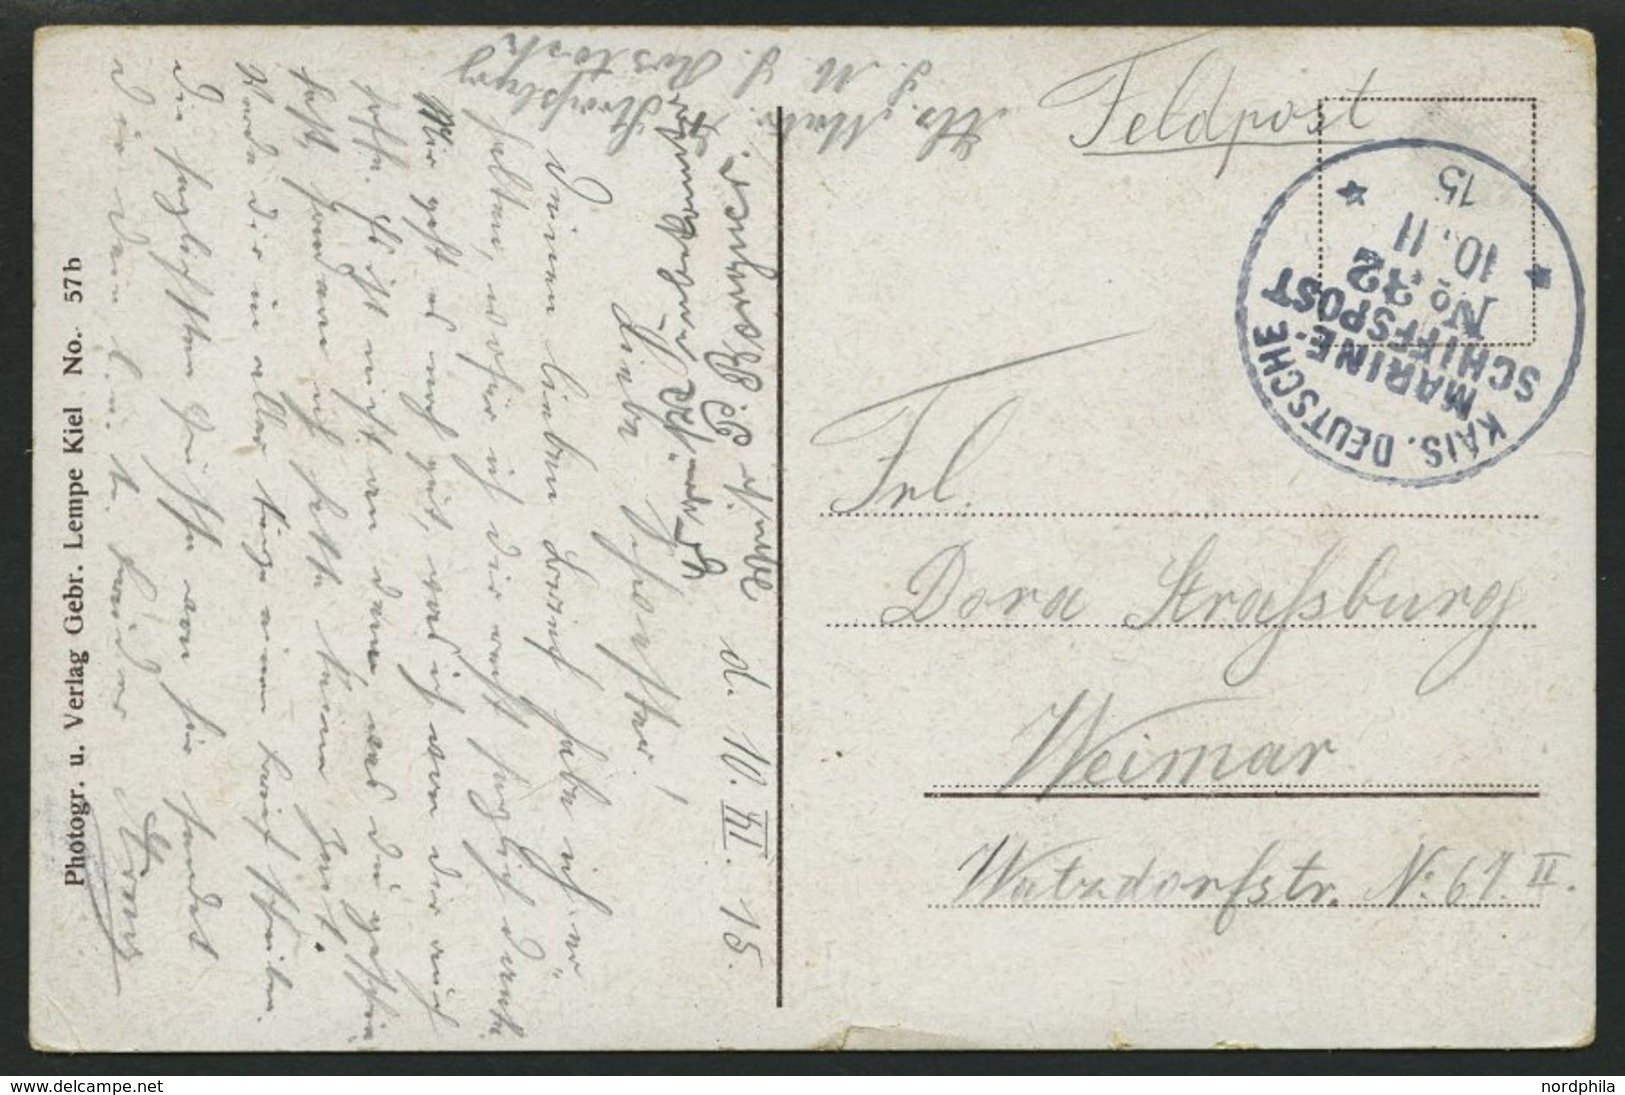 MSP VON 1914 - 1918 32 (Kleiner Kreuzer ROSTOCK), 10.11.1915, Feldpost-Ansichtskarte Von Bord Der Rostock, Pracht - Deutsche Post In Der Türkei